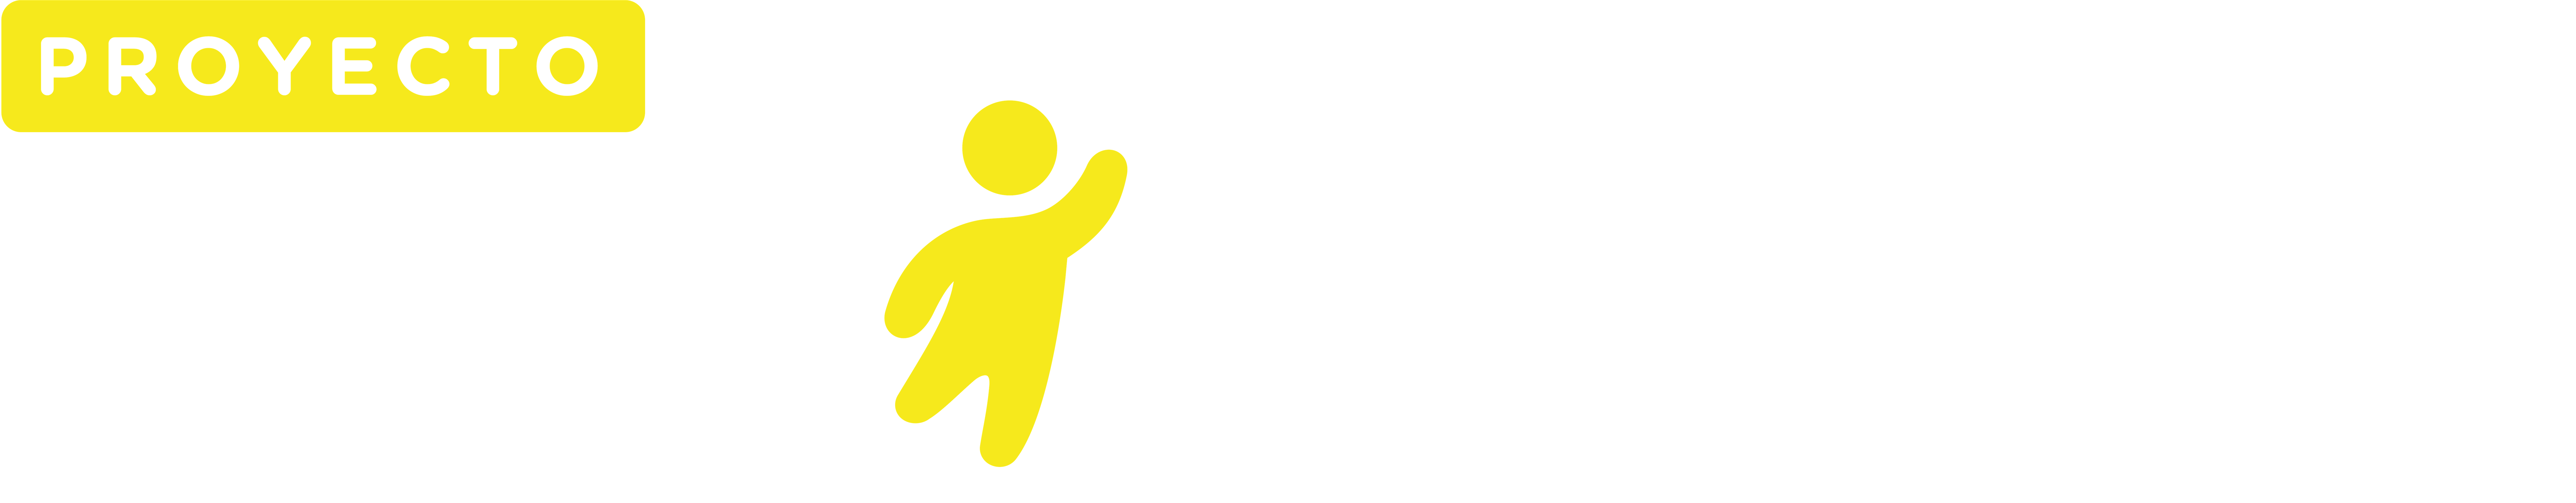 Logo secundario proyecto contigo blanco + amarillo